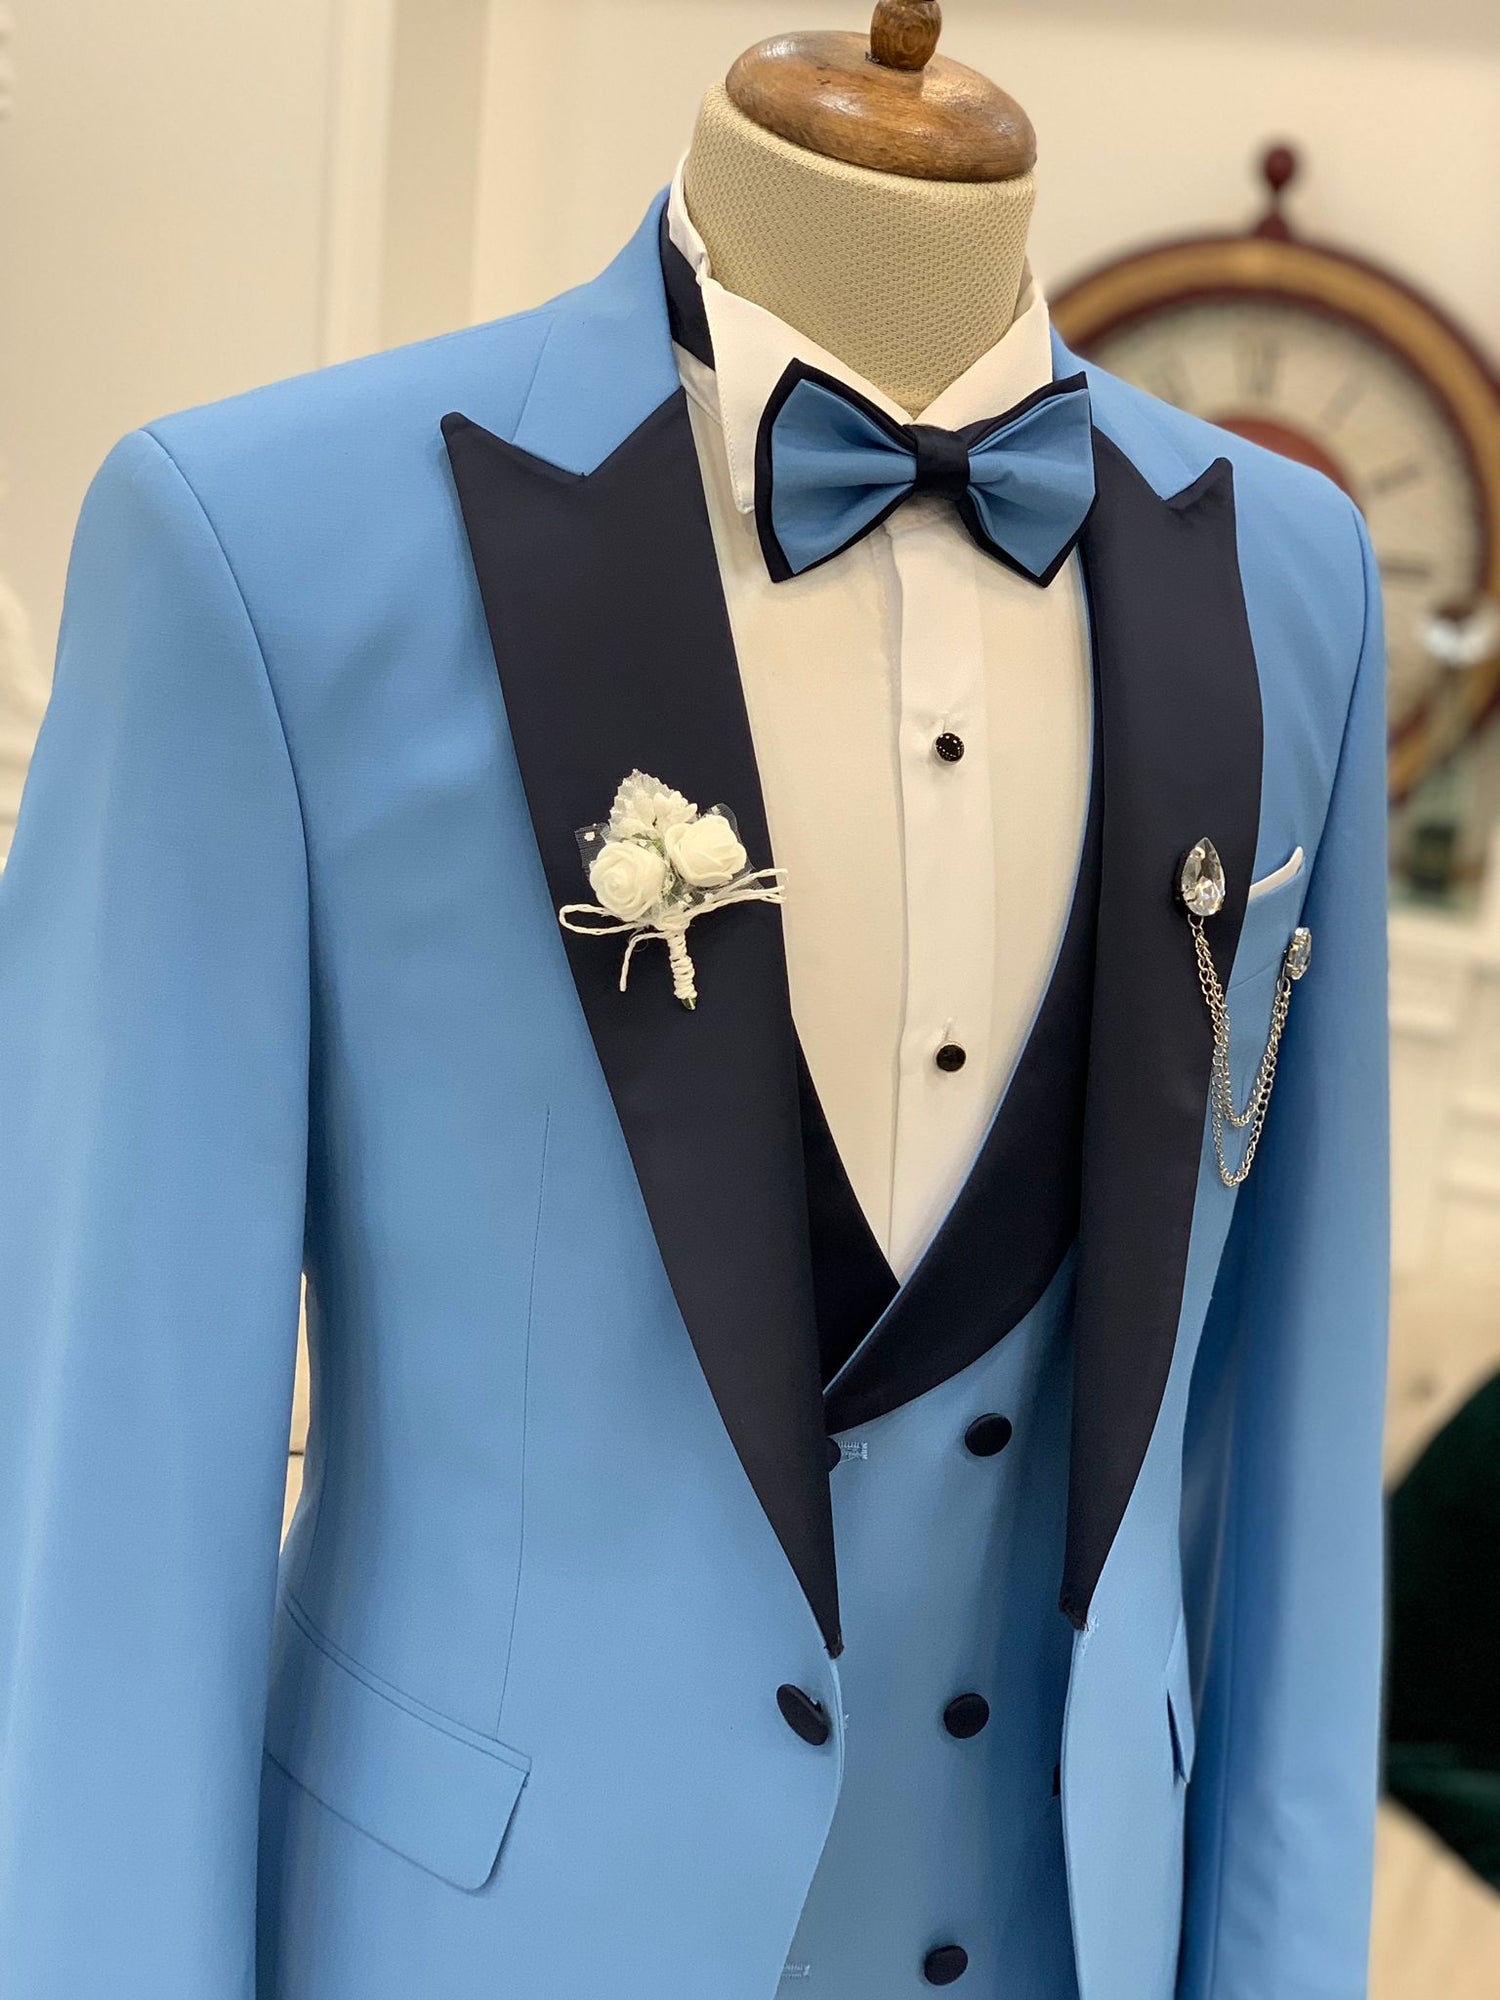 blue and black wedding tuxedo